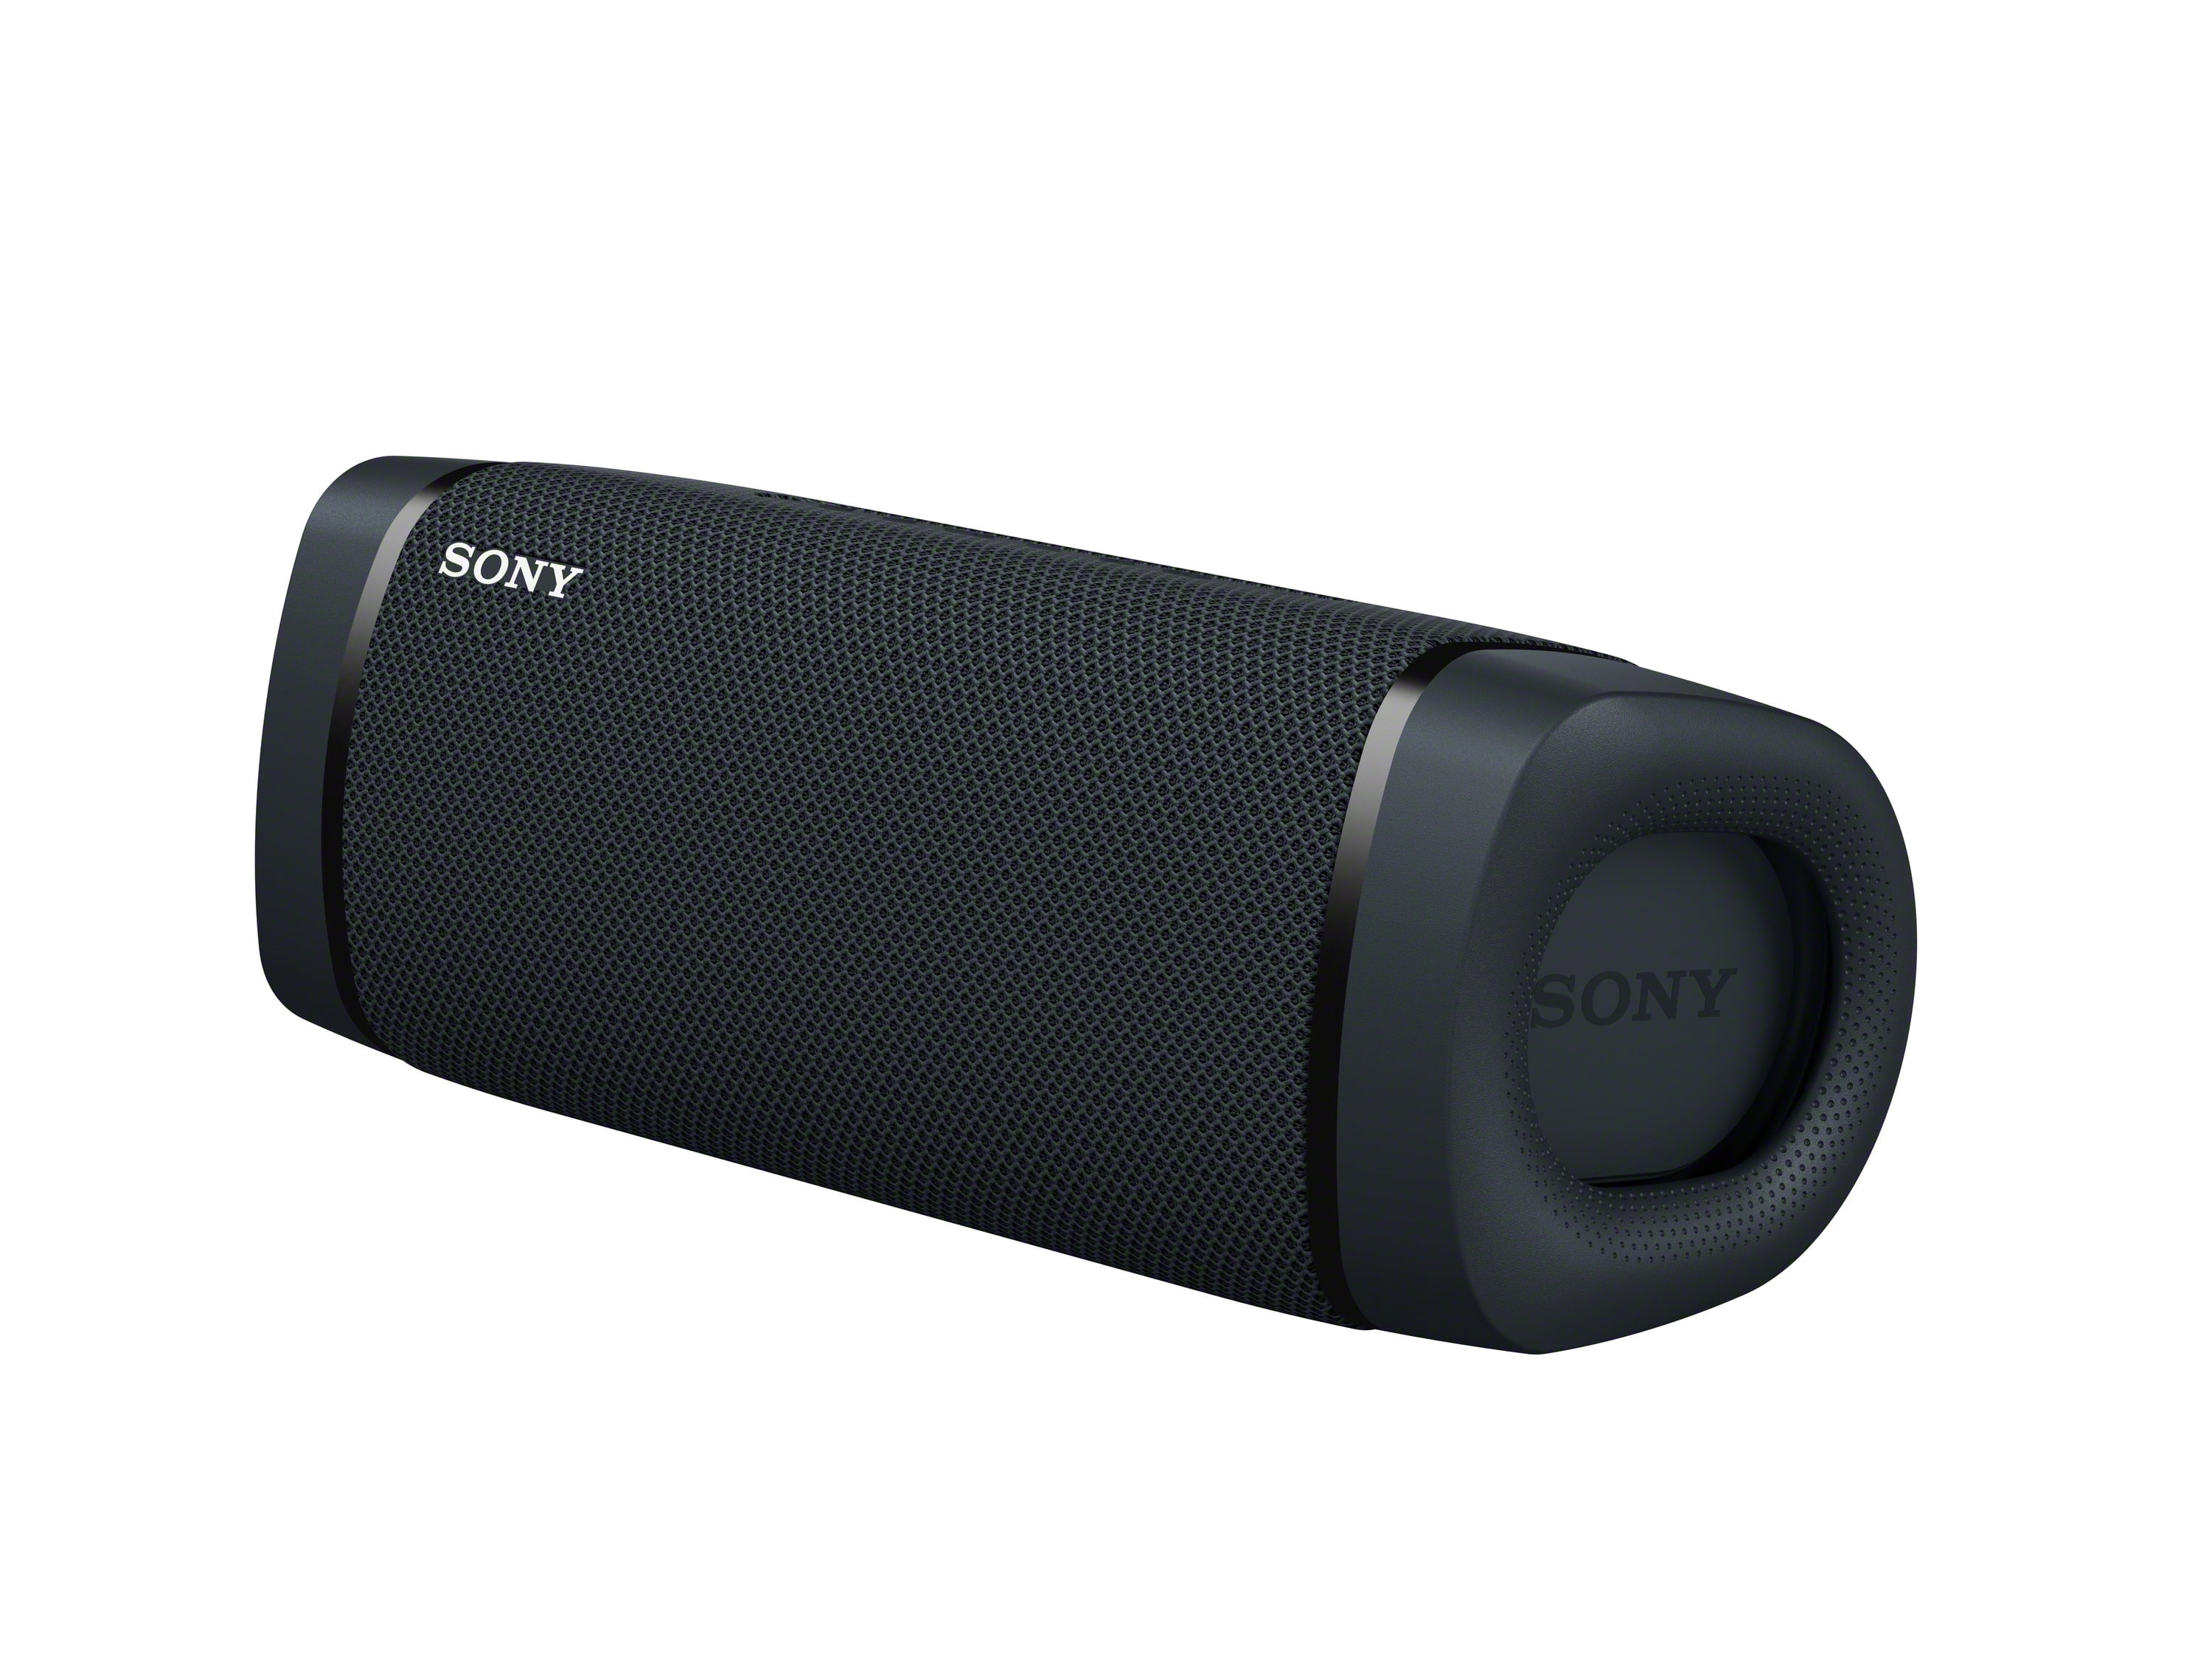 Sony SRSXB33 Black Wireless Waterproof Portable Bluetooth Speaker